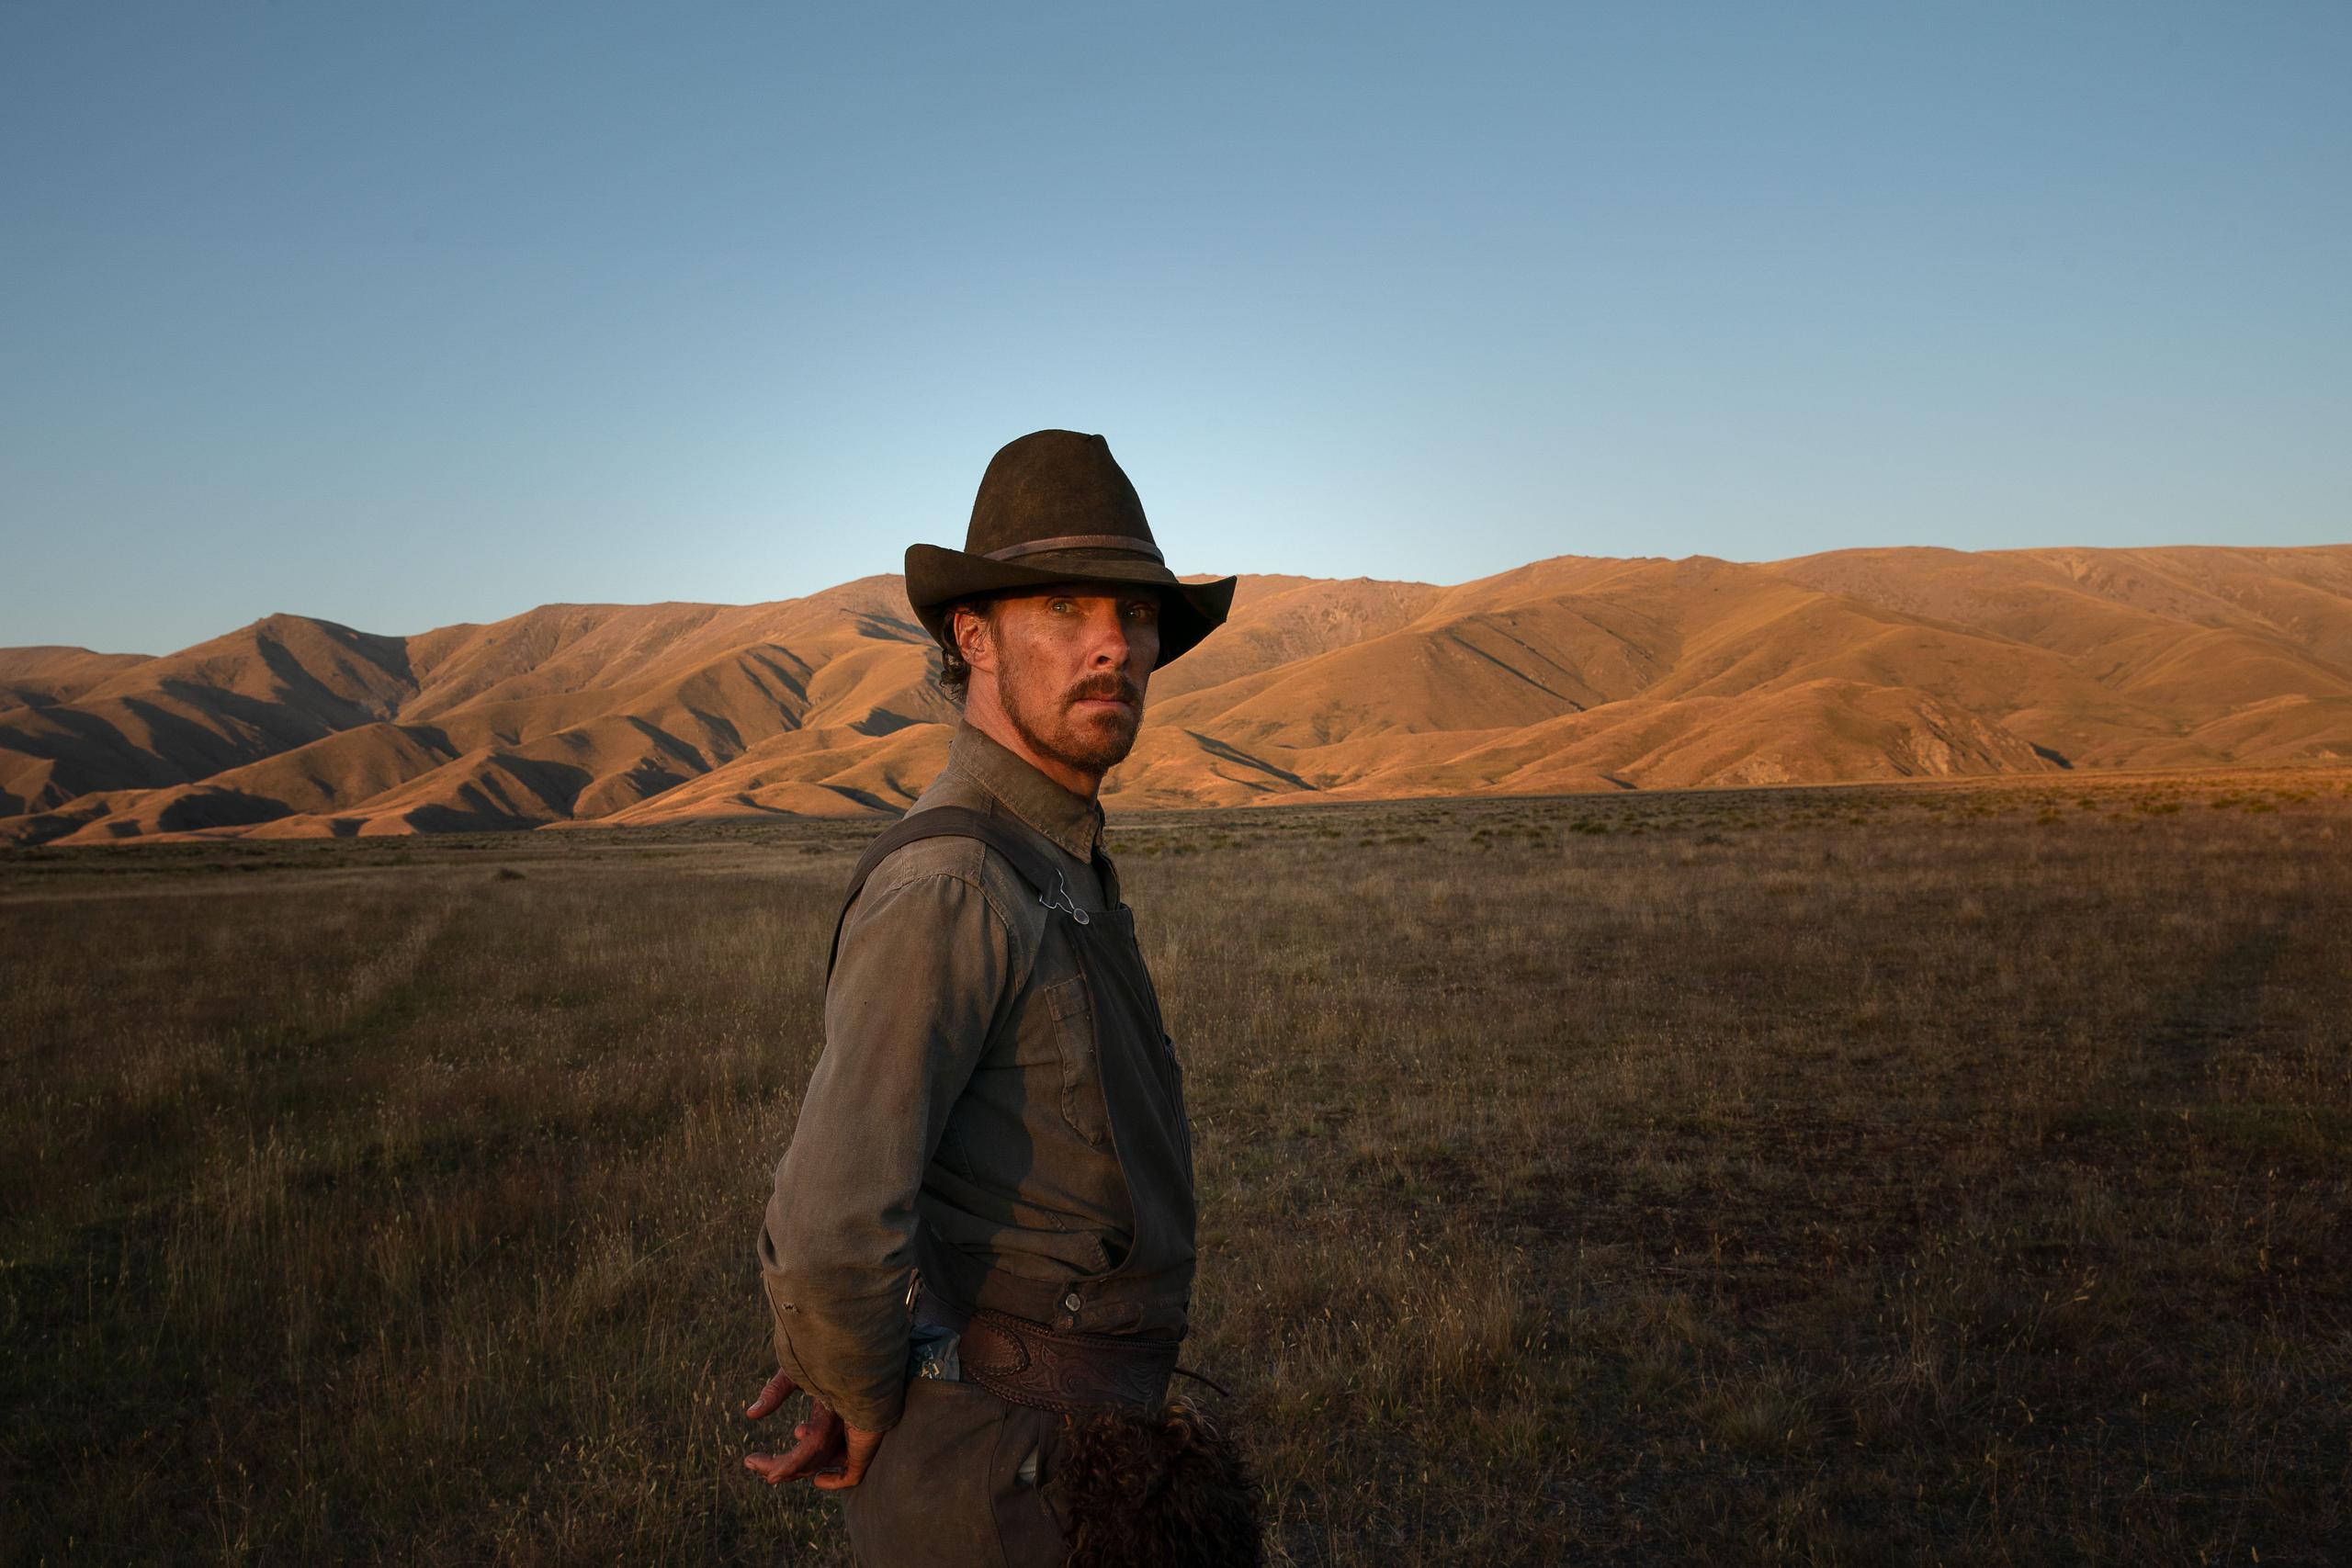 La película cuenta la historia de Phil Burbank, un ranchero que vive aterrorizando a los que lo rodean.